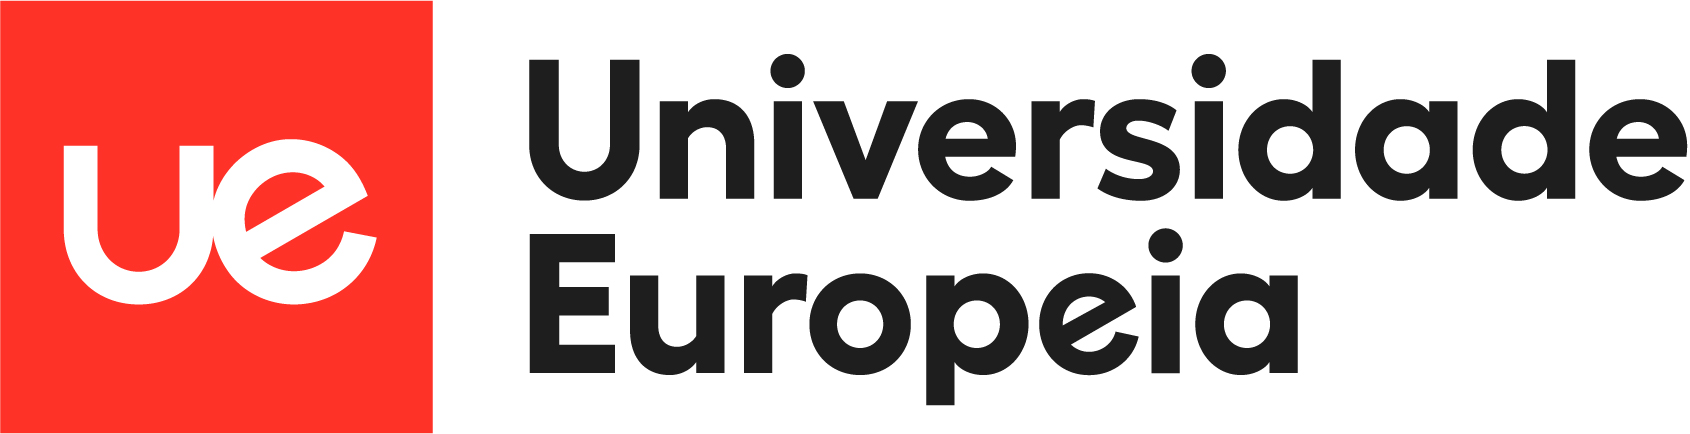 Universidade Europeia - Ensino Superior